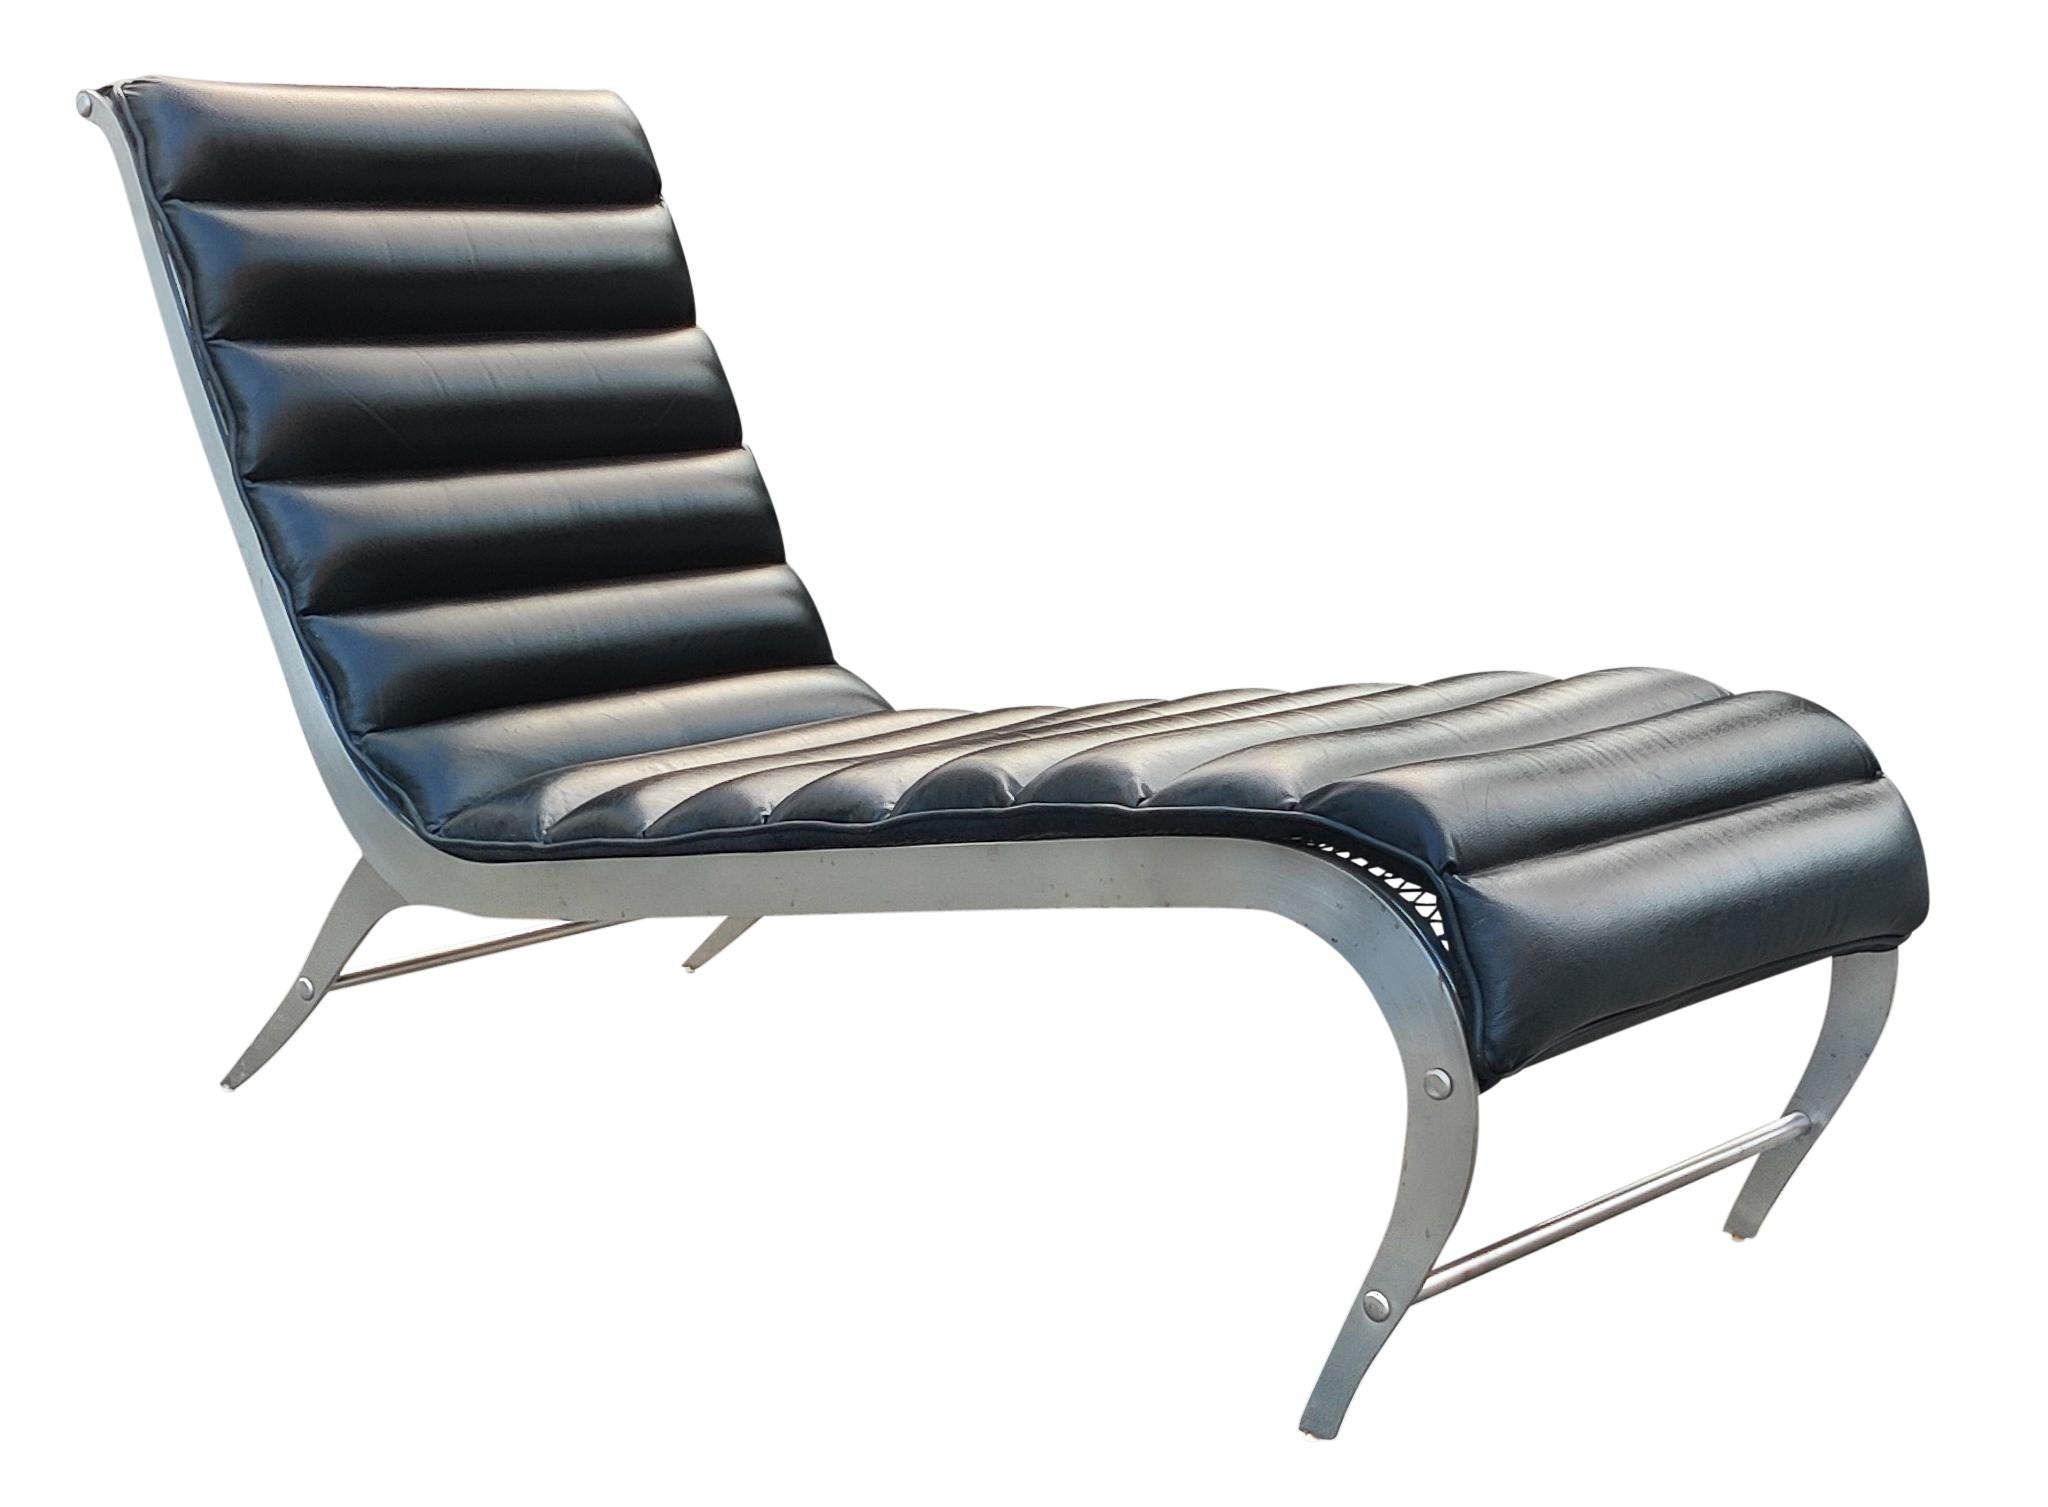 Dans le style élégant des créations de Gio Ponti des années 1940, cette chaise longue curviligne du milieu du siècle et du Vintage est estampillée sur le pied arrière droit - 